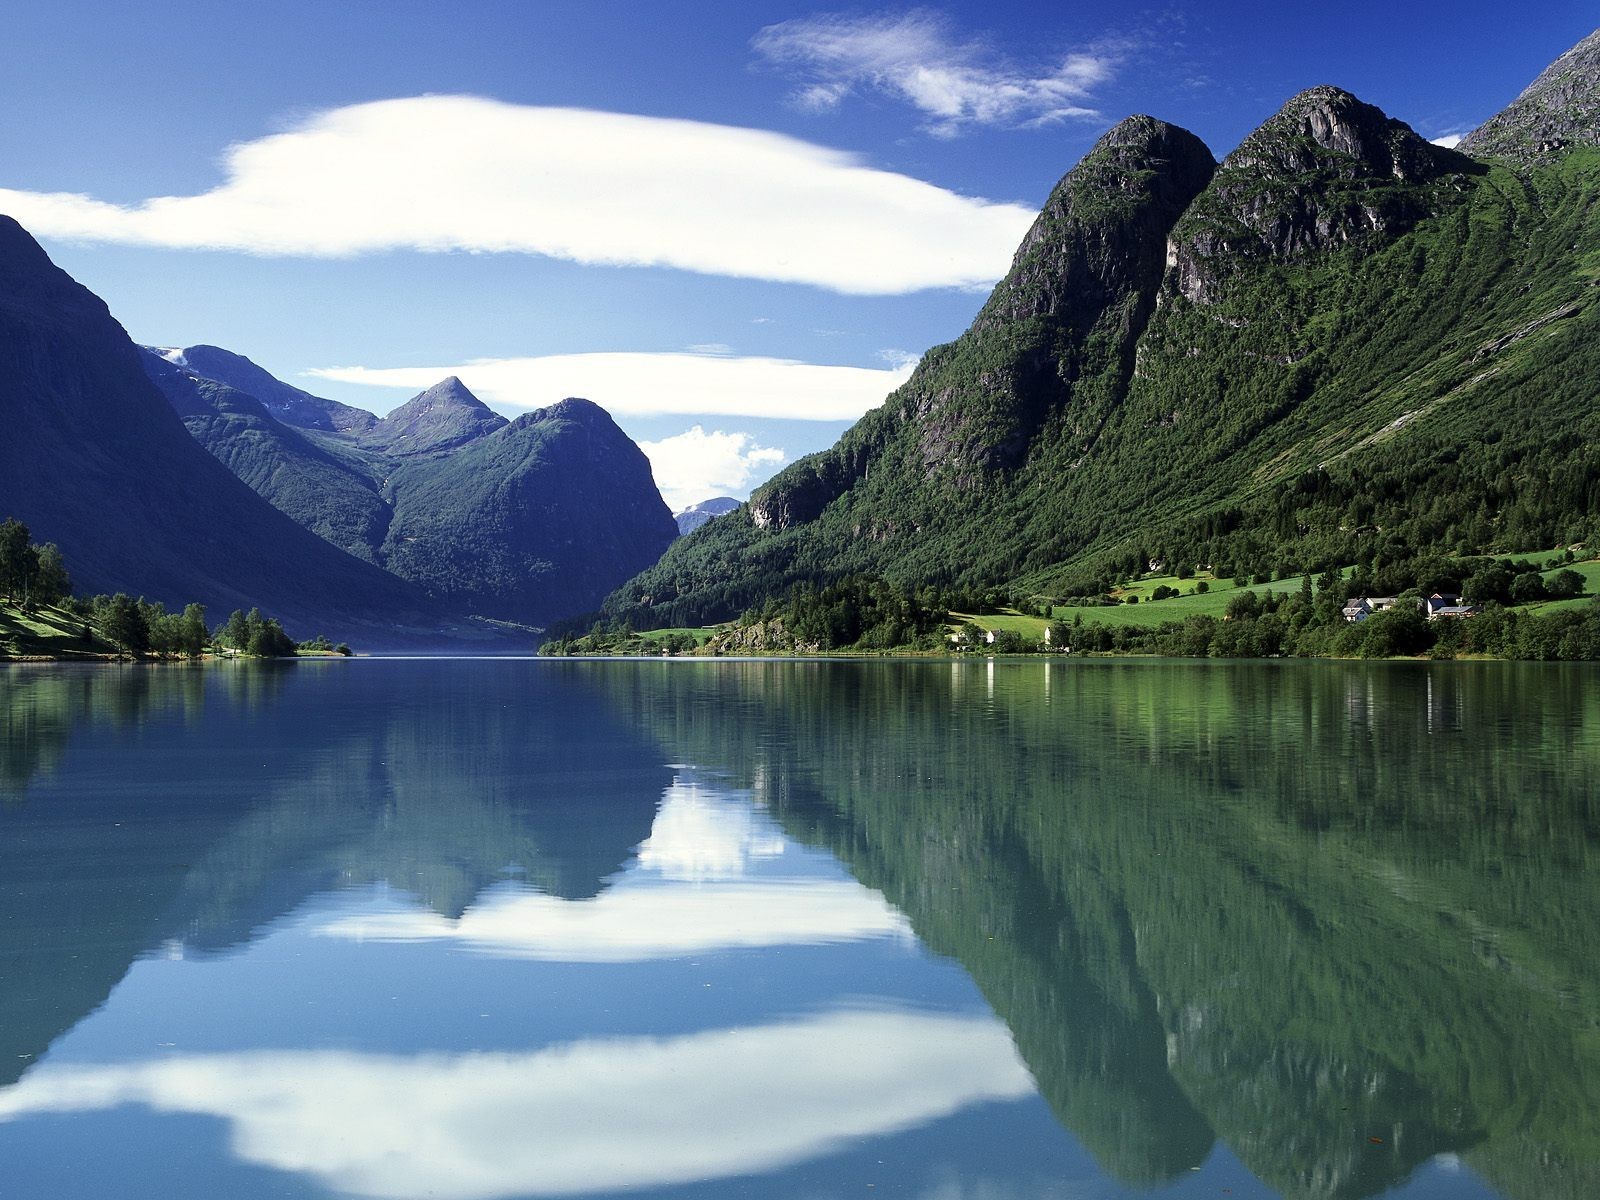 Озеро Стрюн, Норвегия